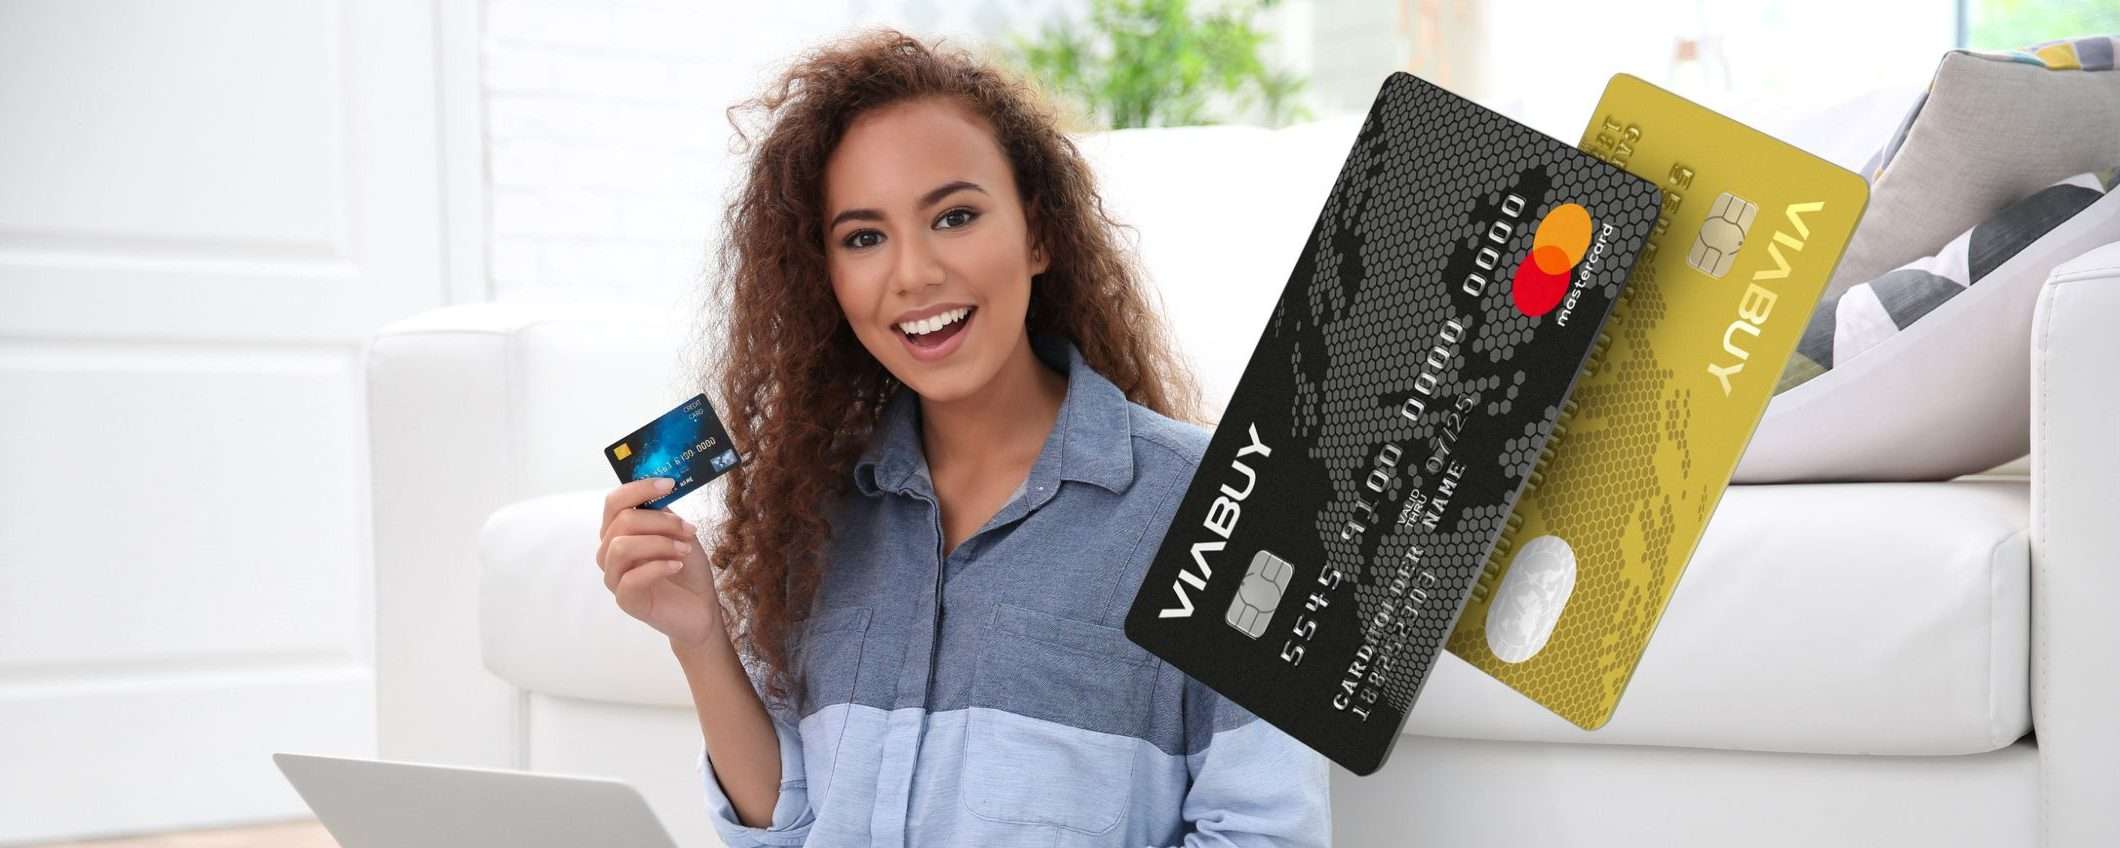 VIABUY: conto online con IBAN e carta prepagata Mastercard senza banca